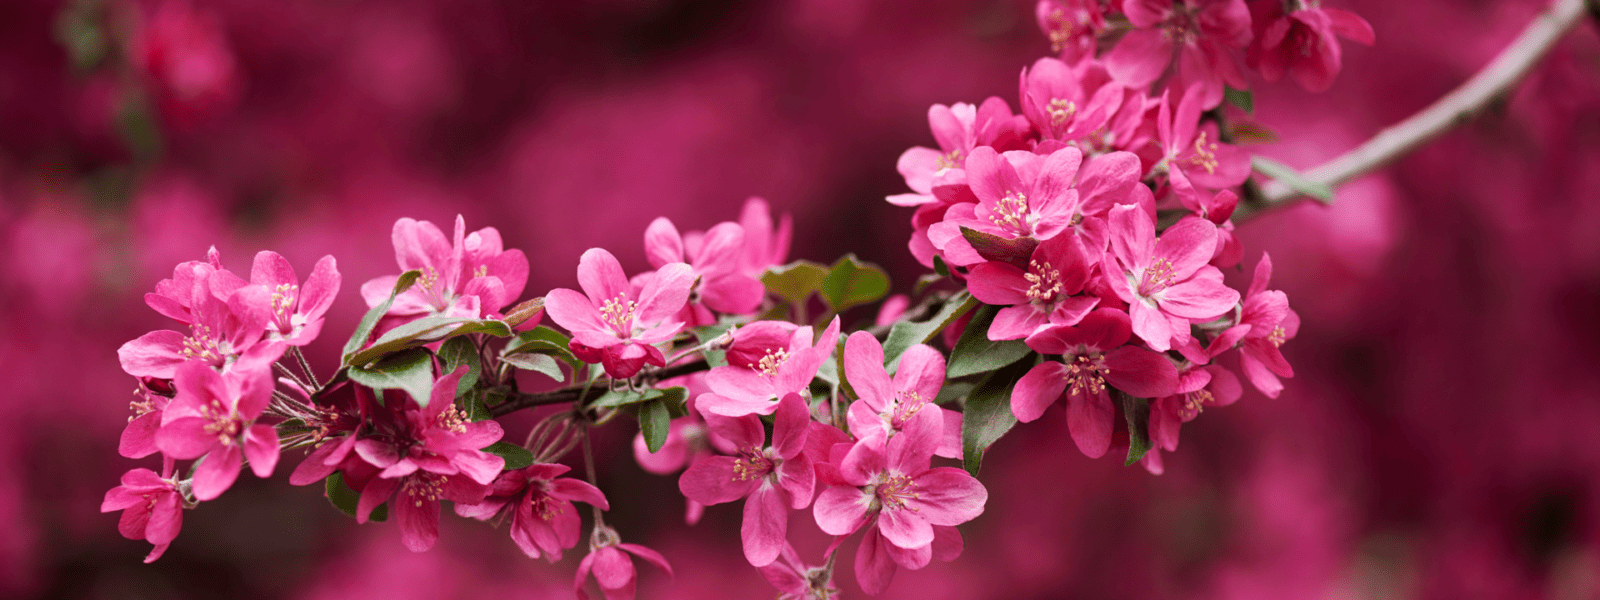 Cherry Blossom Fesival Japanese Friendship Garden Balboa Park